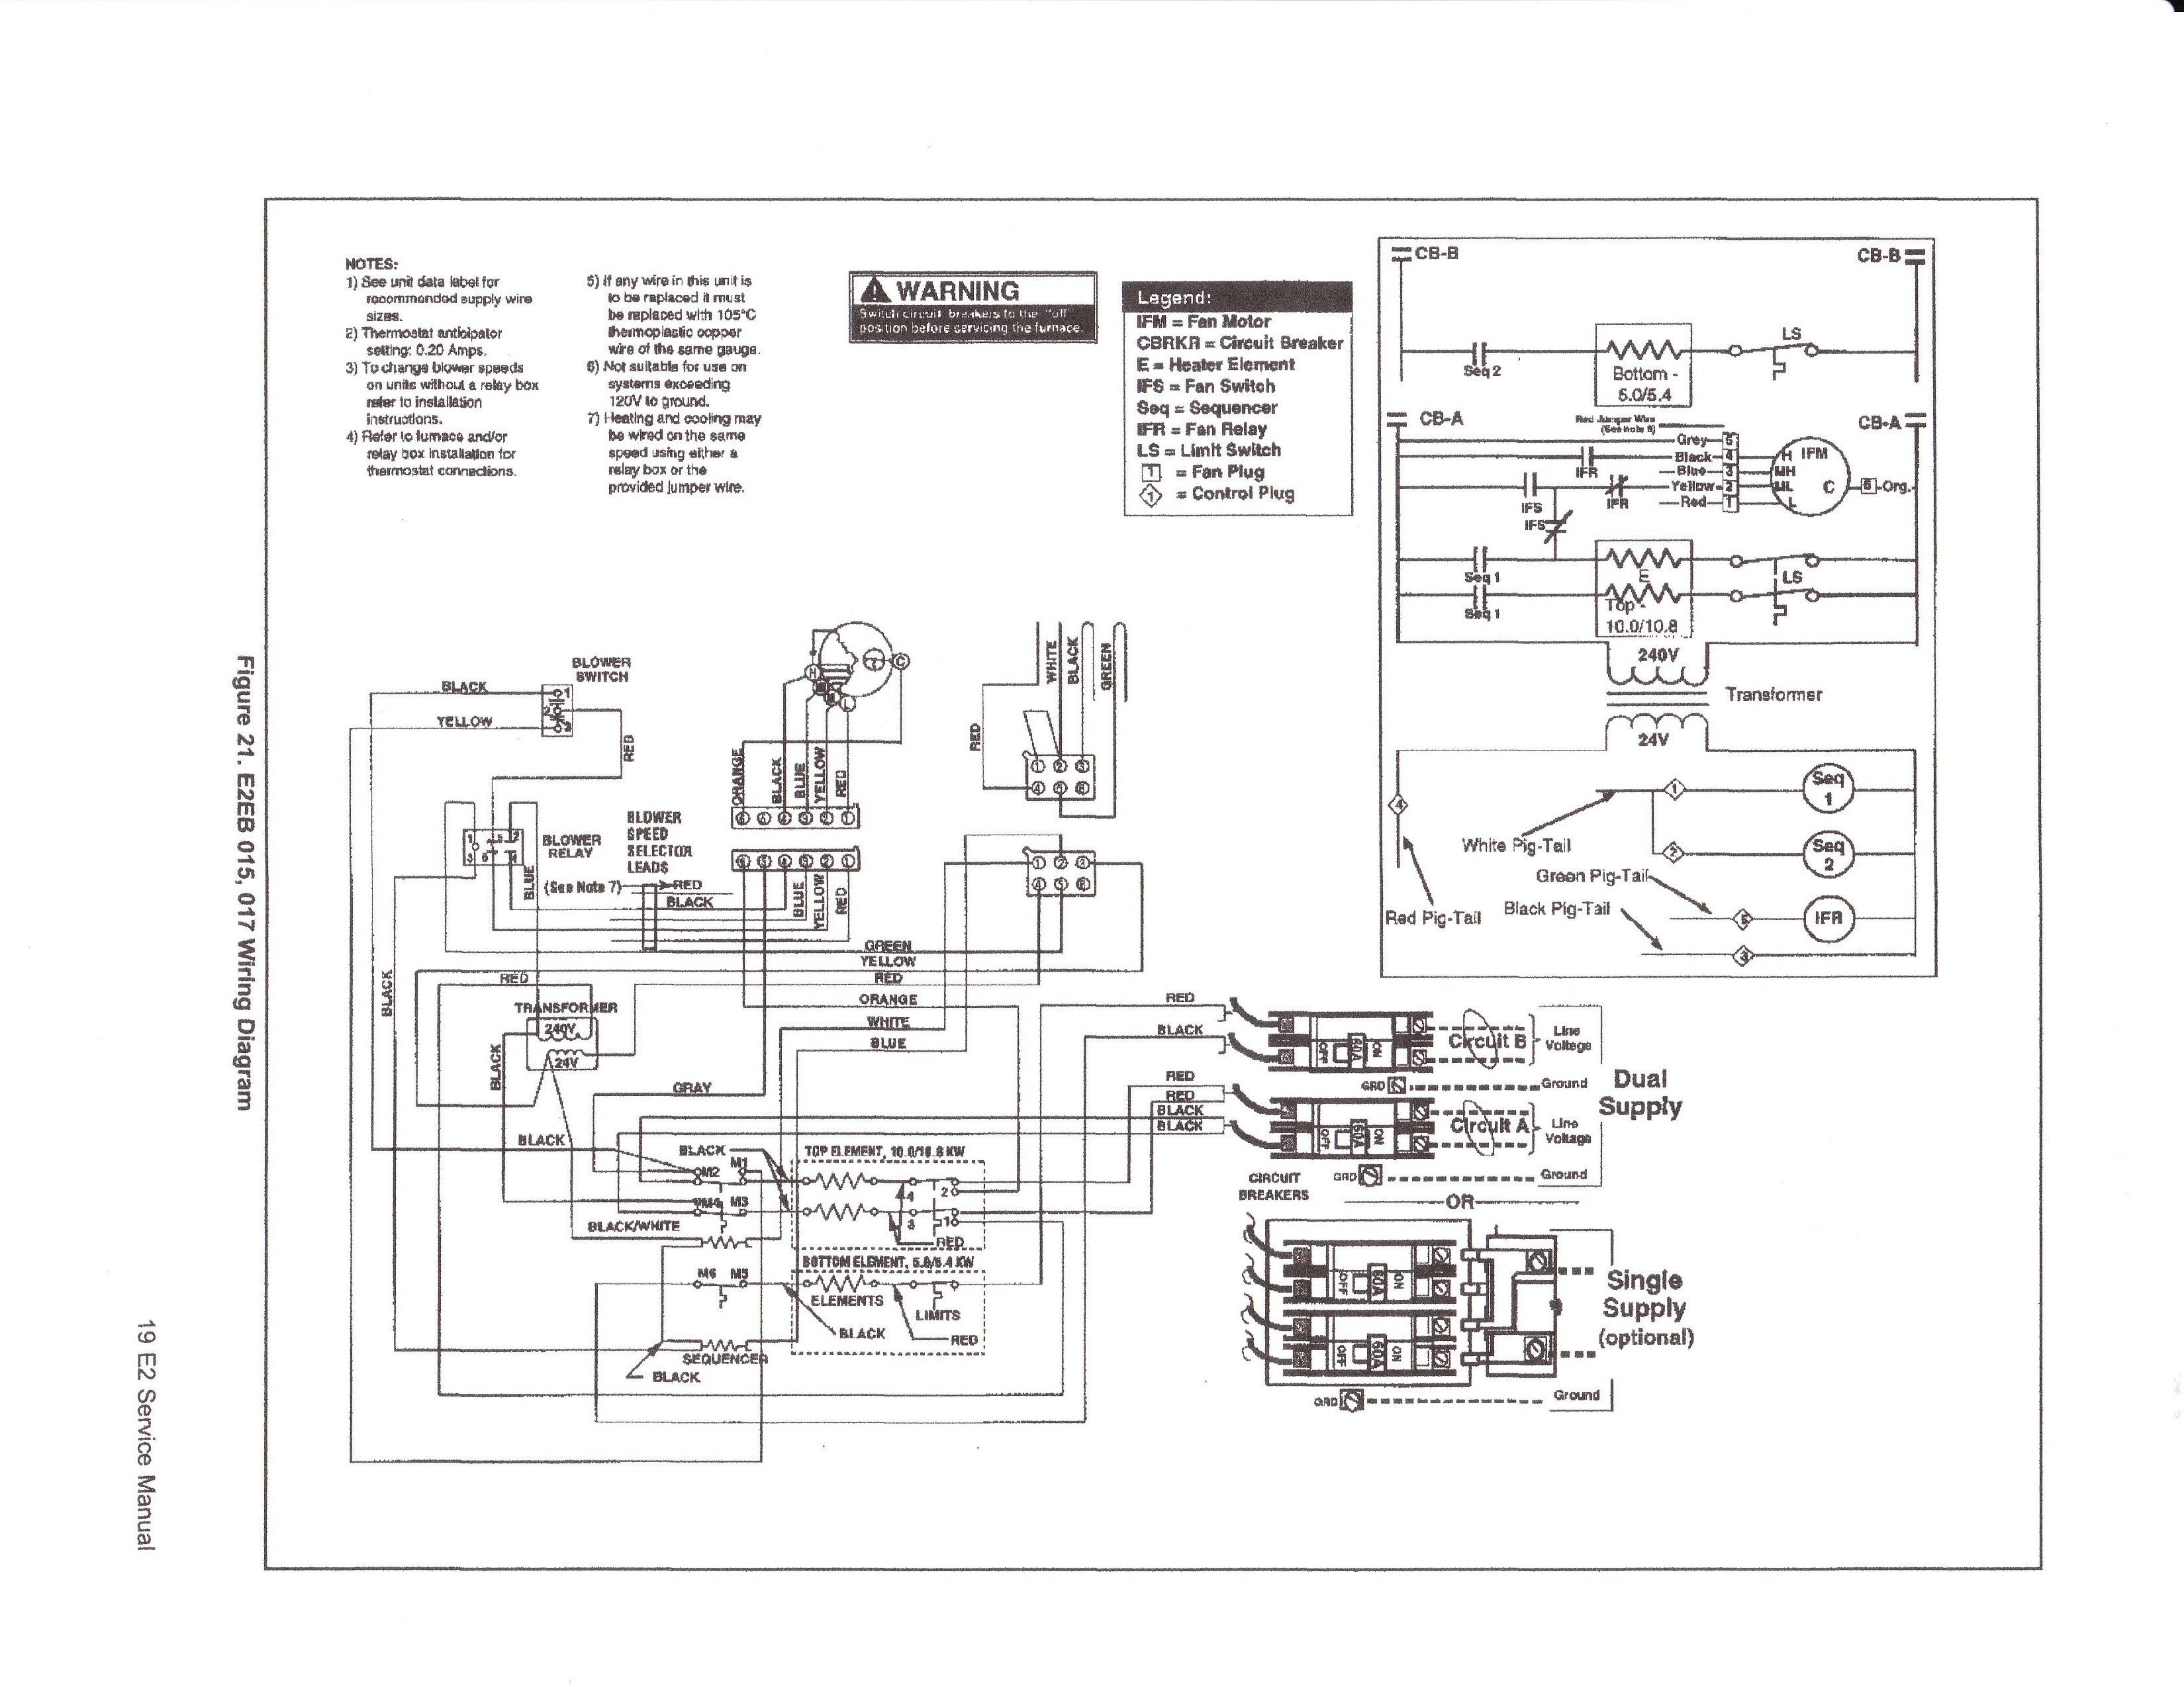 Nordyne Wiring Diagram - Wiring Diagram Data - Nordyne Wiring Diagram Electric Furnace